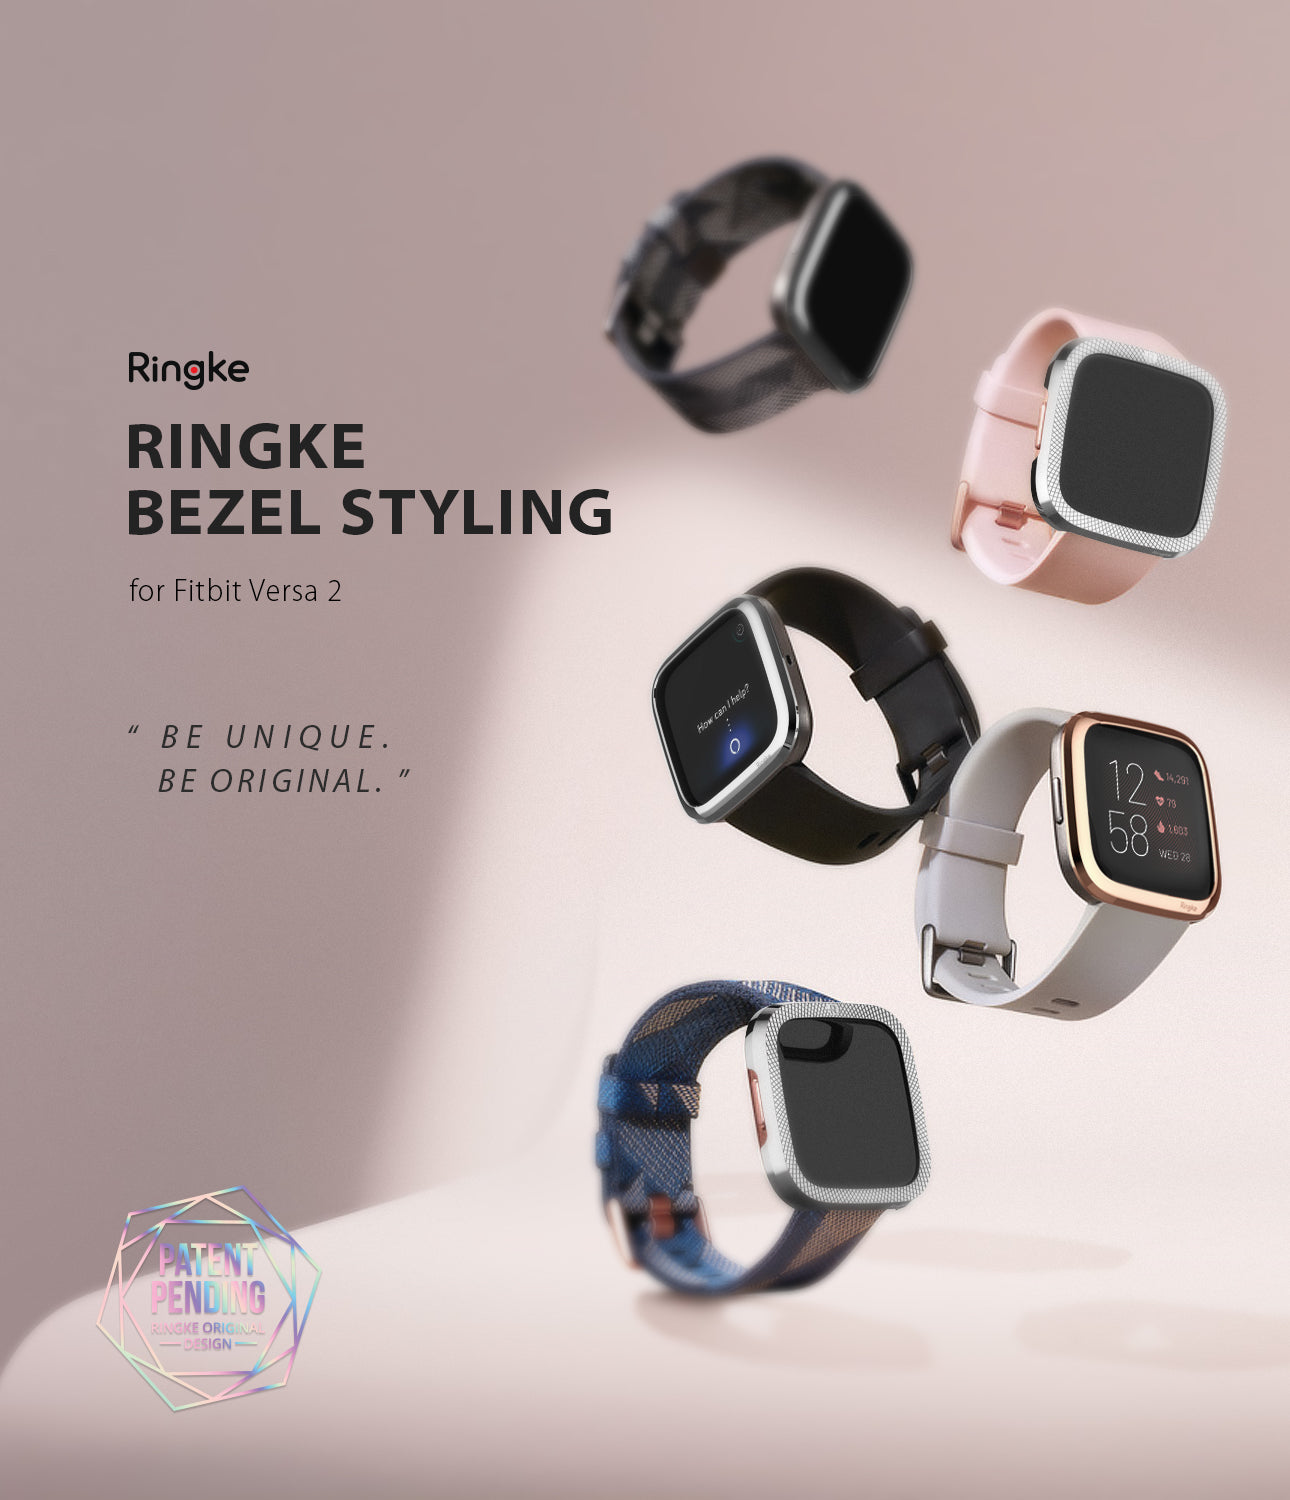 Ringke Bezel Styling Fitbit Versa 2, Full Stainless Steel Frame, Black, 2-03 ST